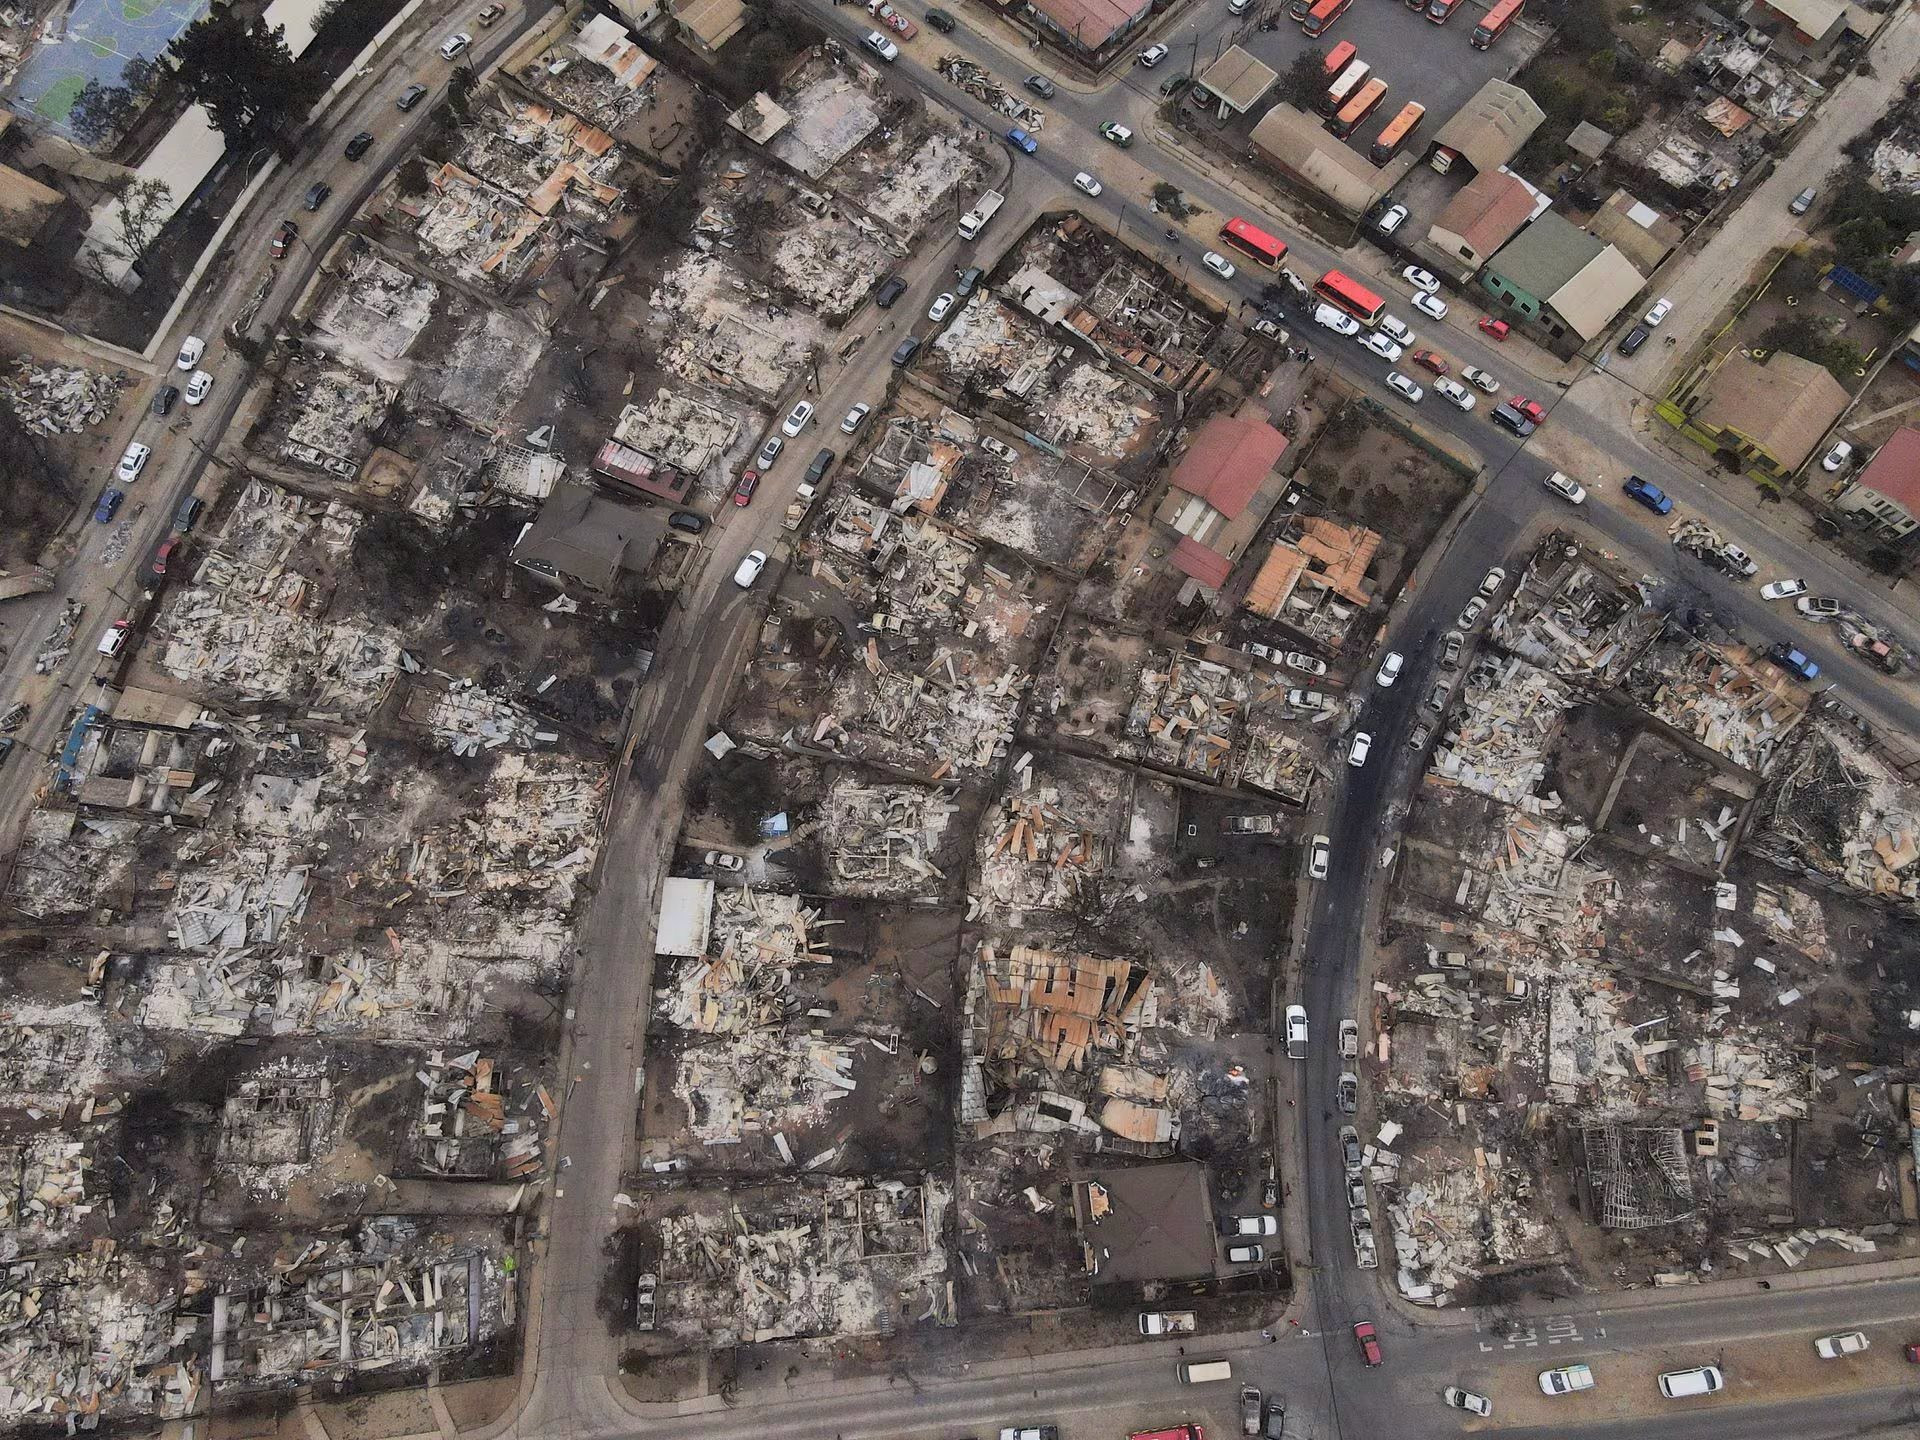 99 người đã thiệt mạng trong vụ cháy rừng tại Chile